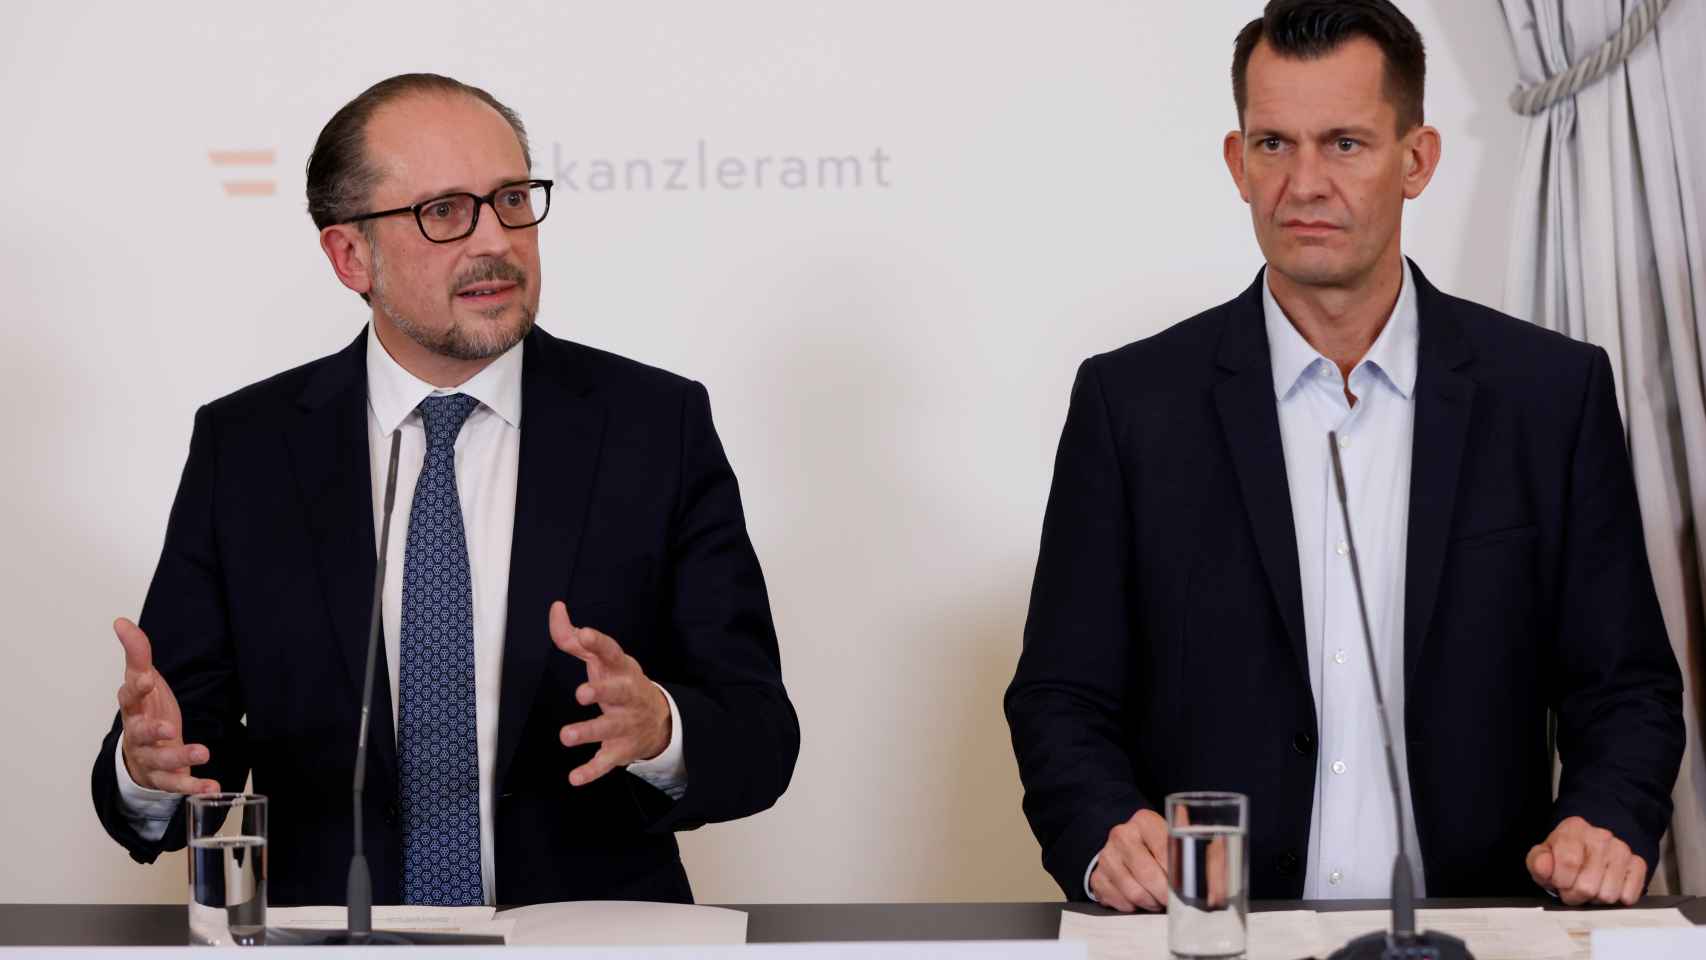 El canciller austriaco, Alexander Schallenberg, a la izquierda junto al ministro de Sanidad, Wolfgang Mueckstein.